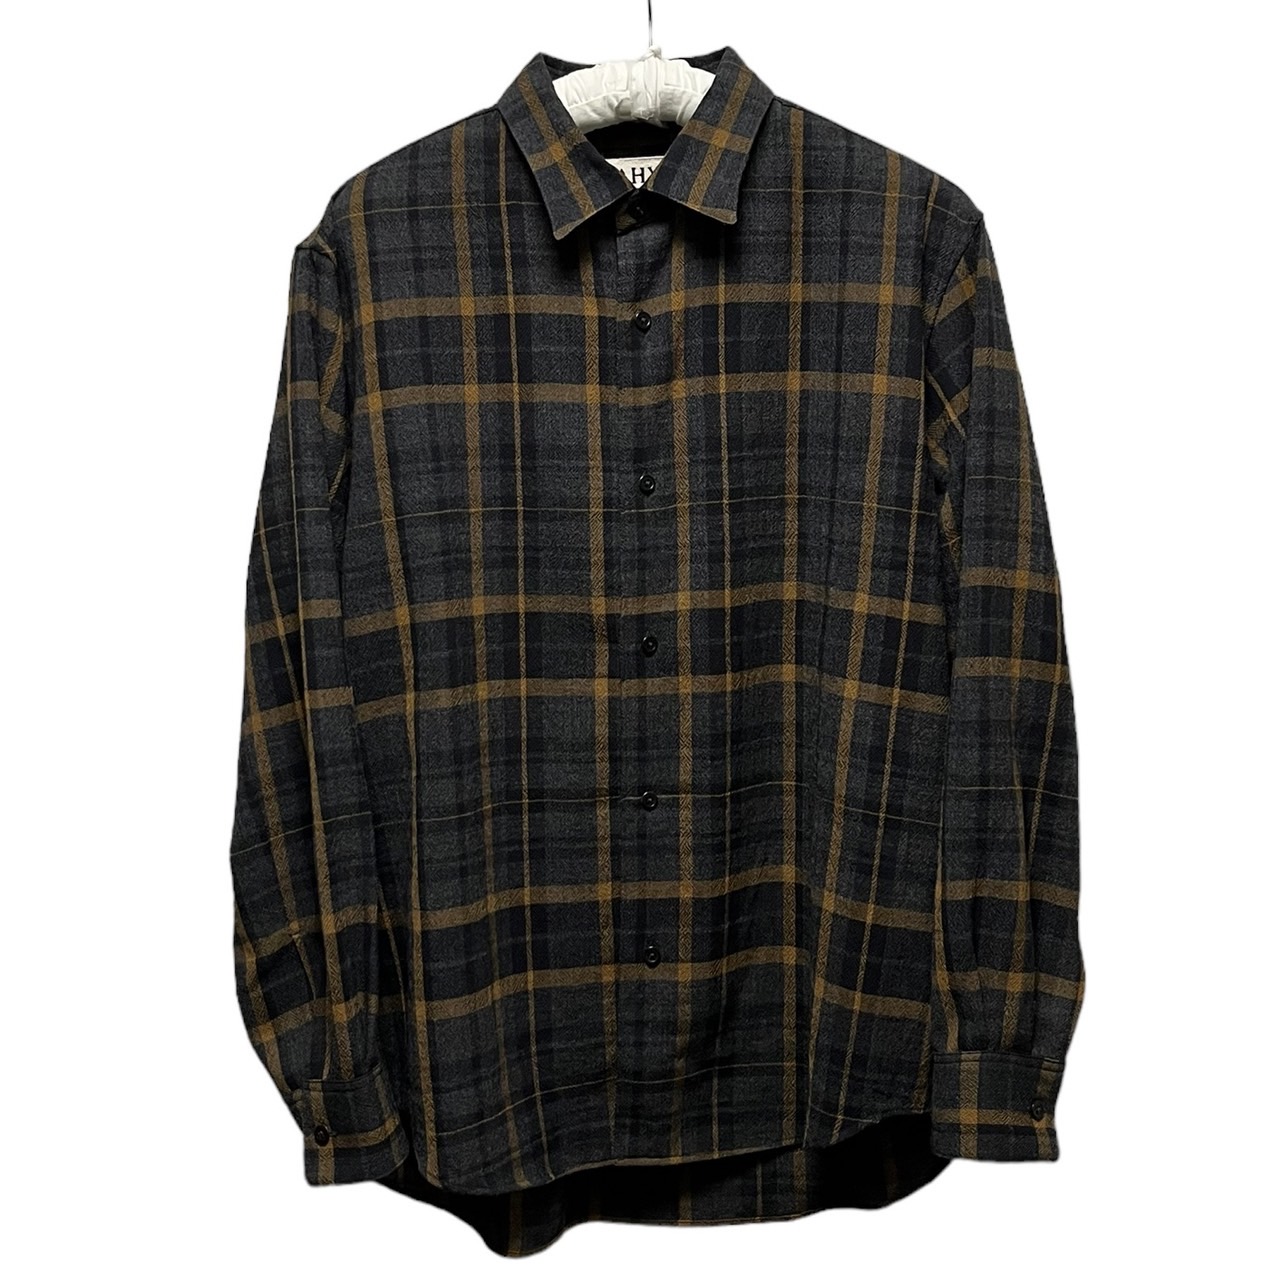 Nahyat Wool check shirts W-005 買取金額 11,700円